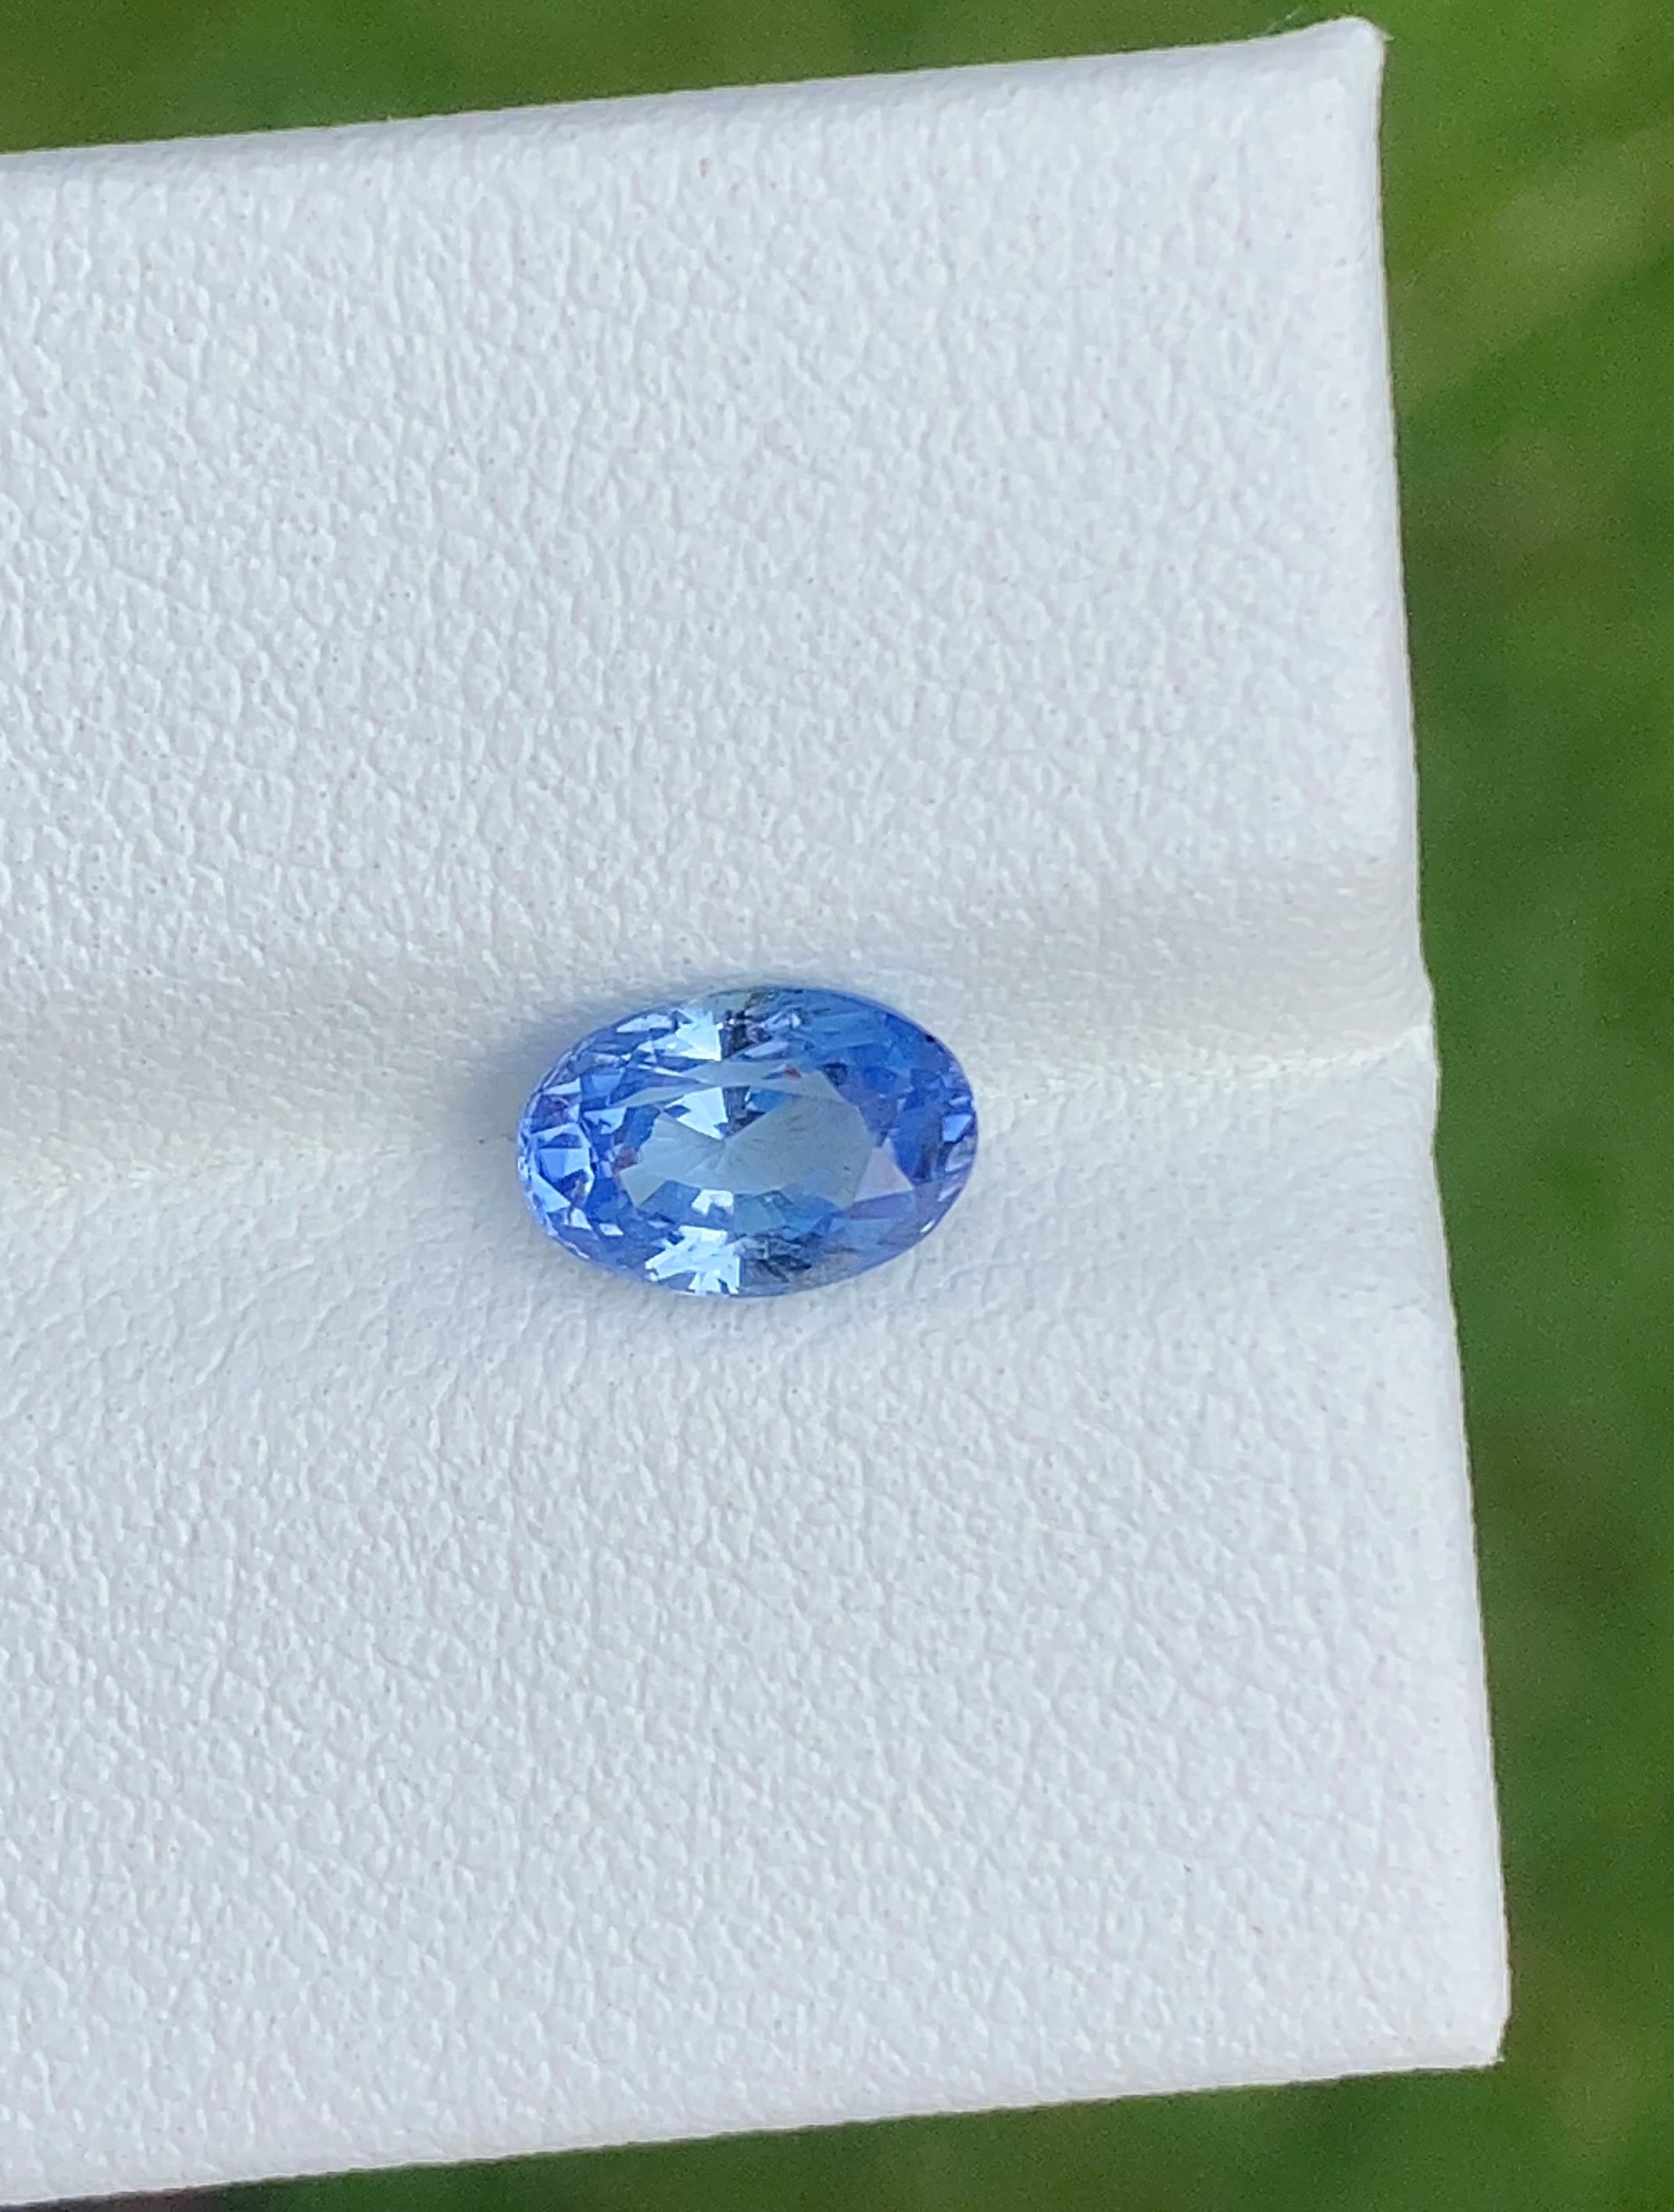 Saphir bleu non chauffé de Ceylan 1,25 carats.

• Variété : Sapphire
• Origine : Sri Lanka (Ceylan)
• Couleur(s) : Bleu 
• Forme et style de coupe : Ovale
• Dimensions : 8,3 mm x 6,1 mm x 5,2 mm : 8,3 mm x 6,1 mm x 5,2 mm
• Calibré : Non
• Degré de